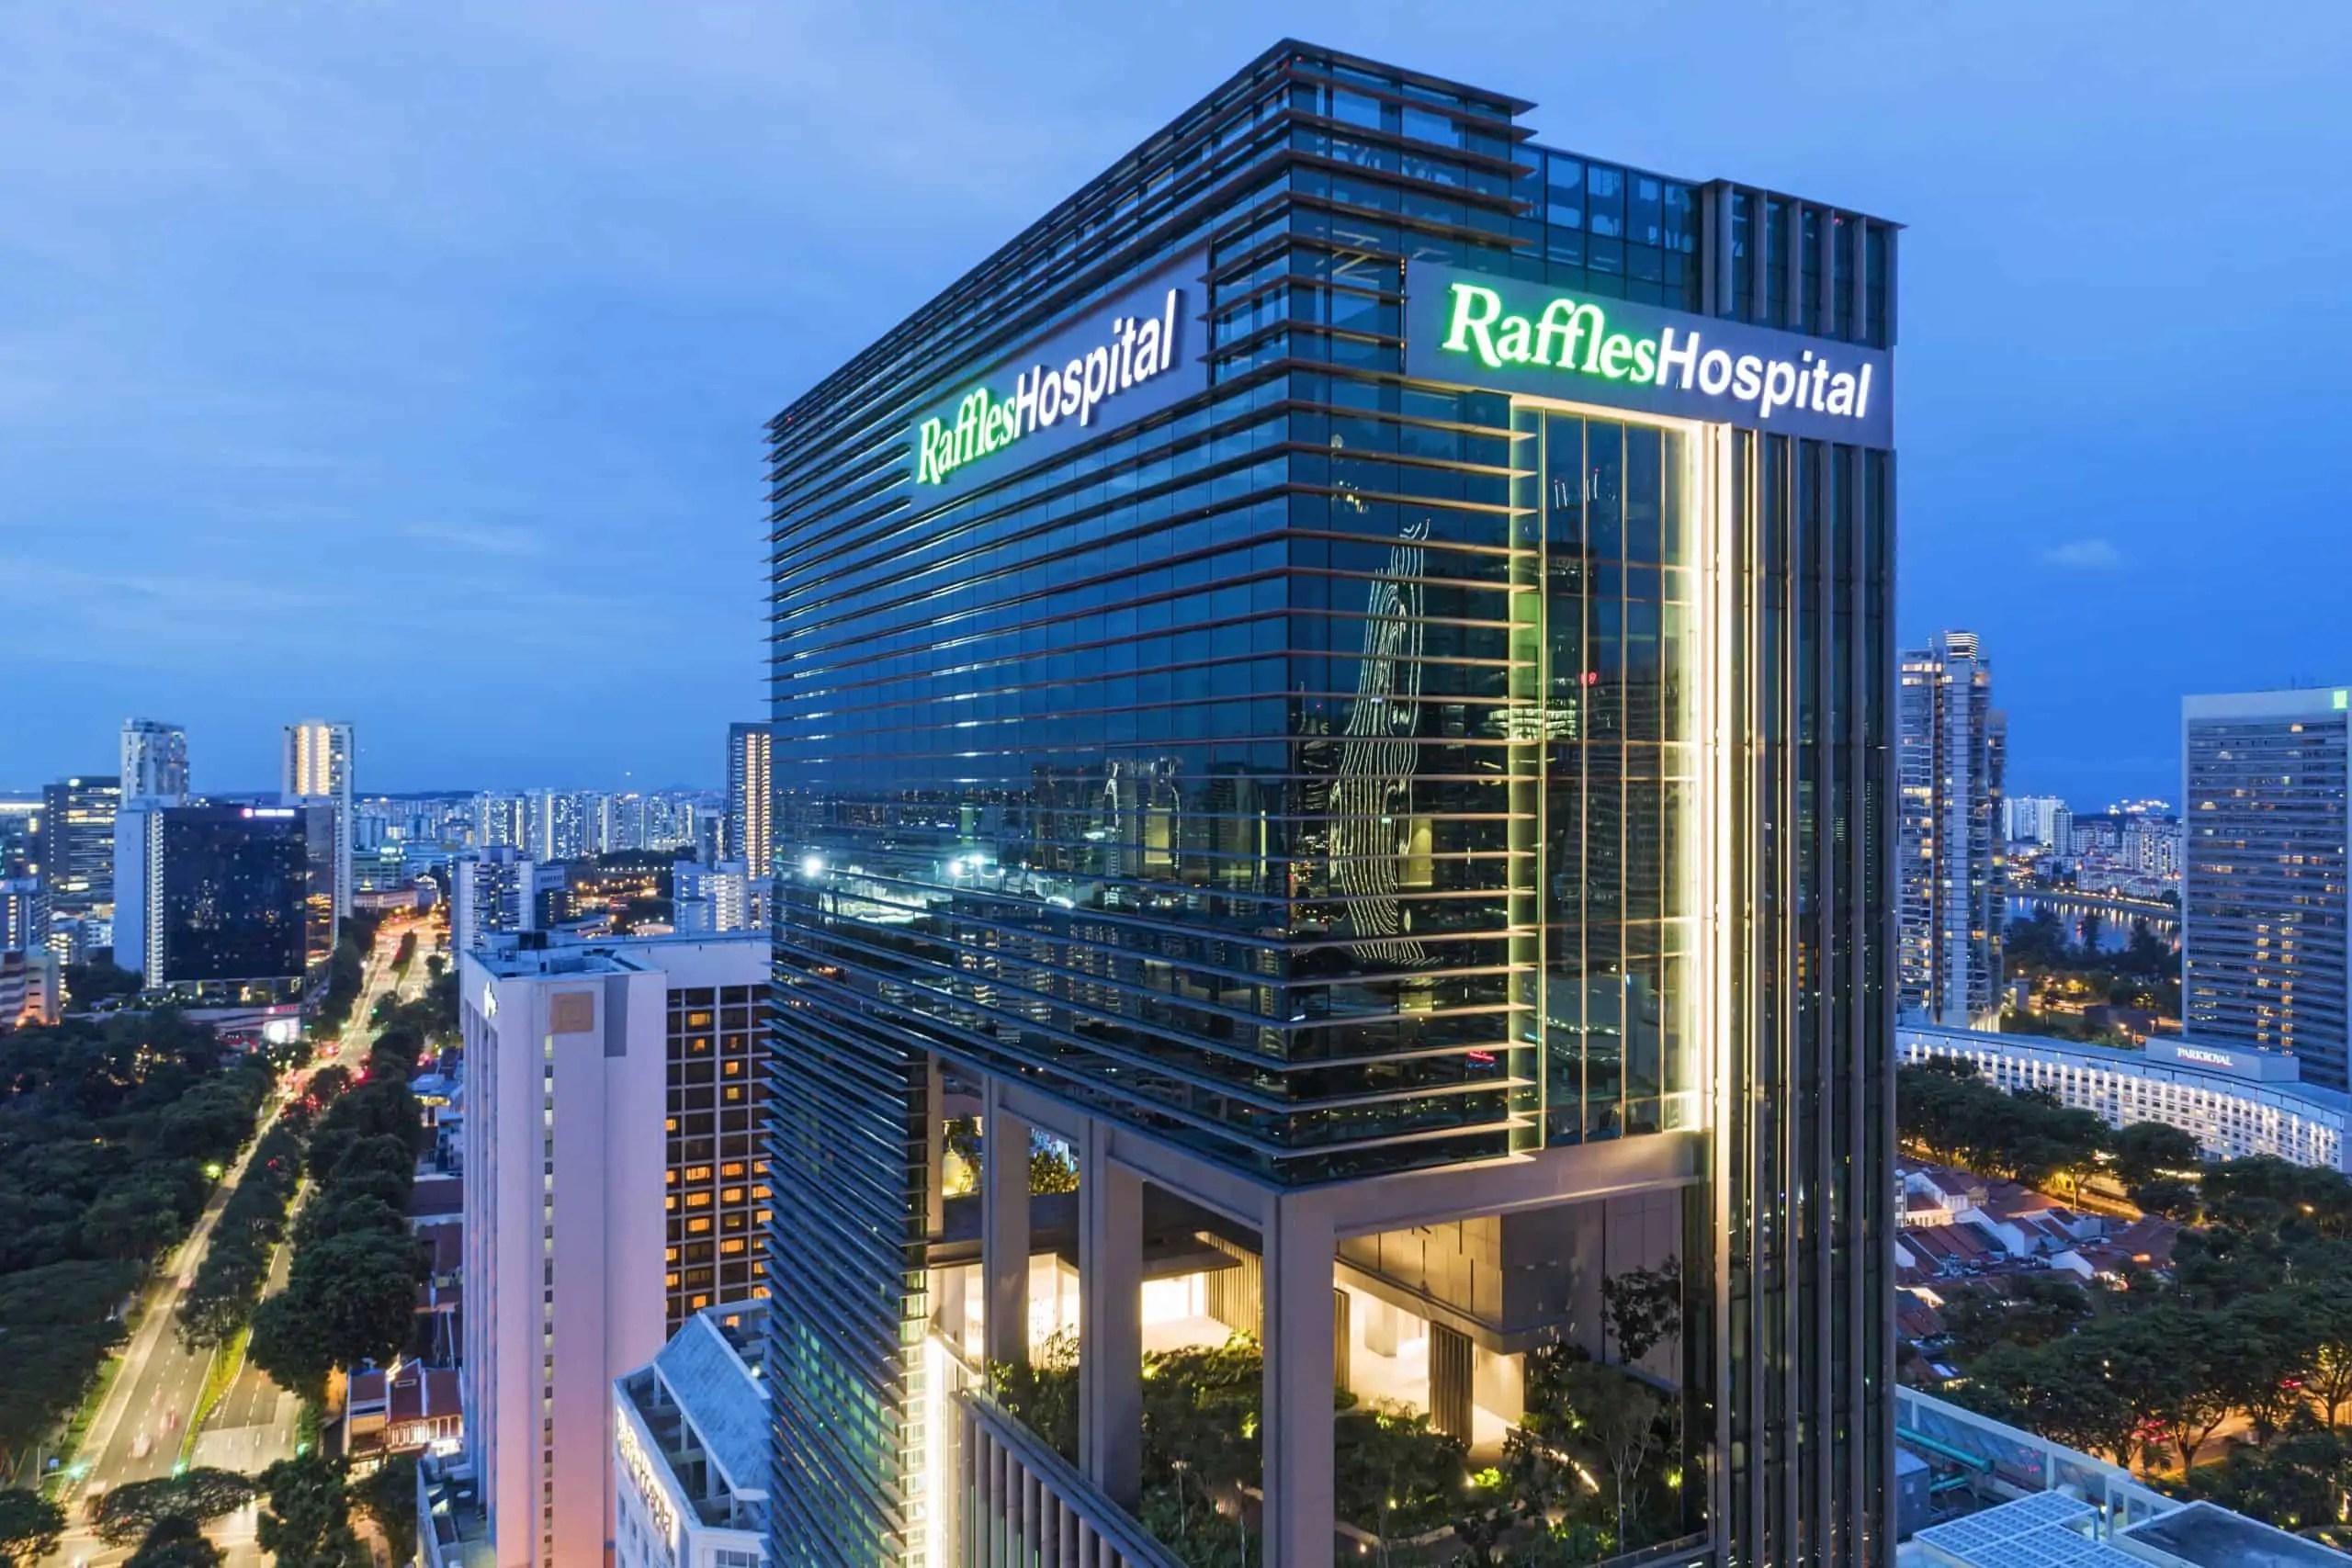 Raffles Hospital - Blue Hour_LR